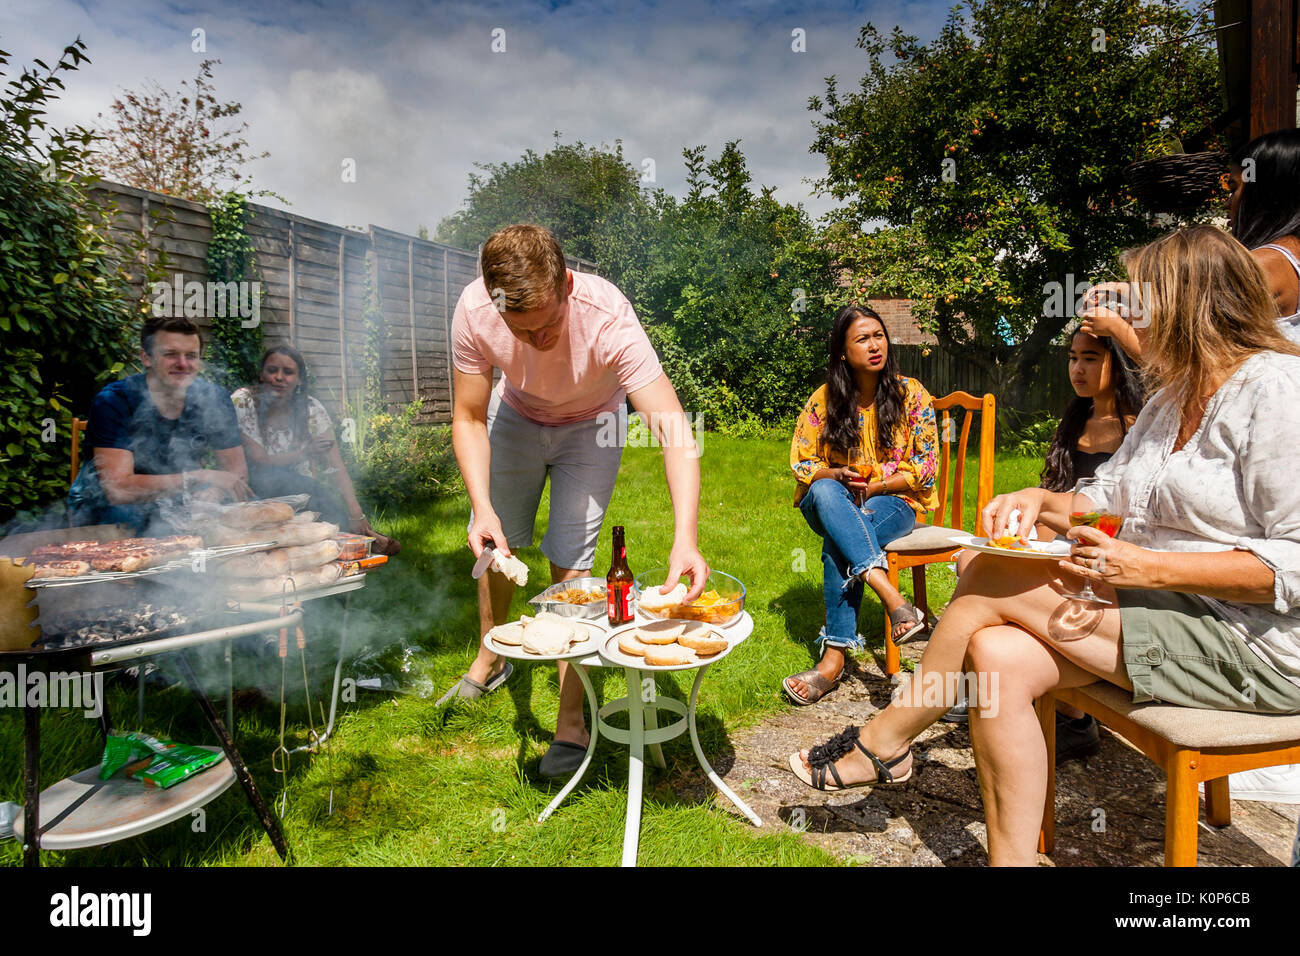 Ein junger Mann kochen Essen in einer traditionellen Familie Grill, Sussex, UK Stockfoto